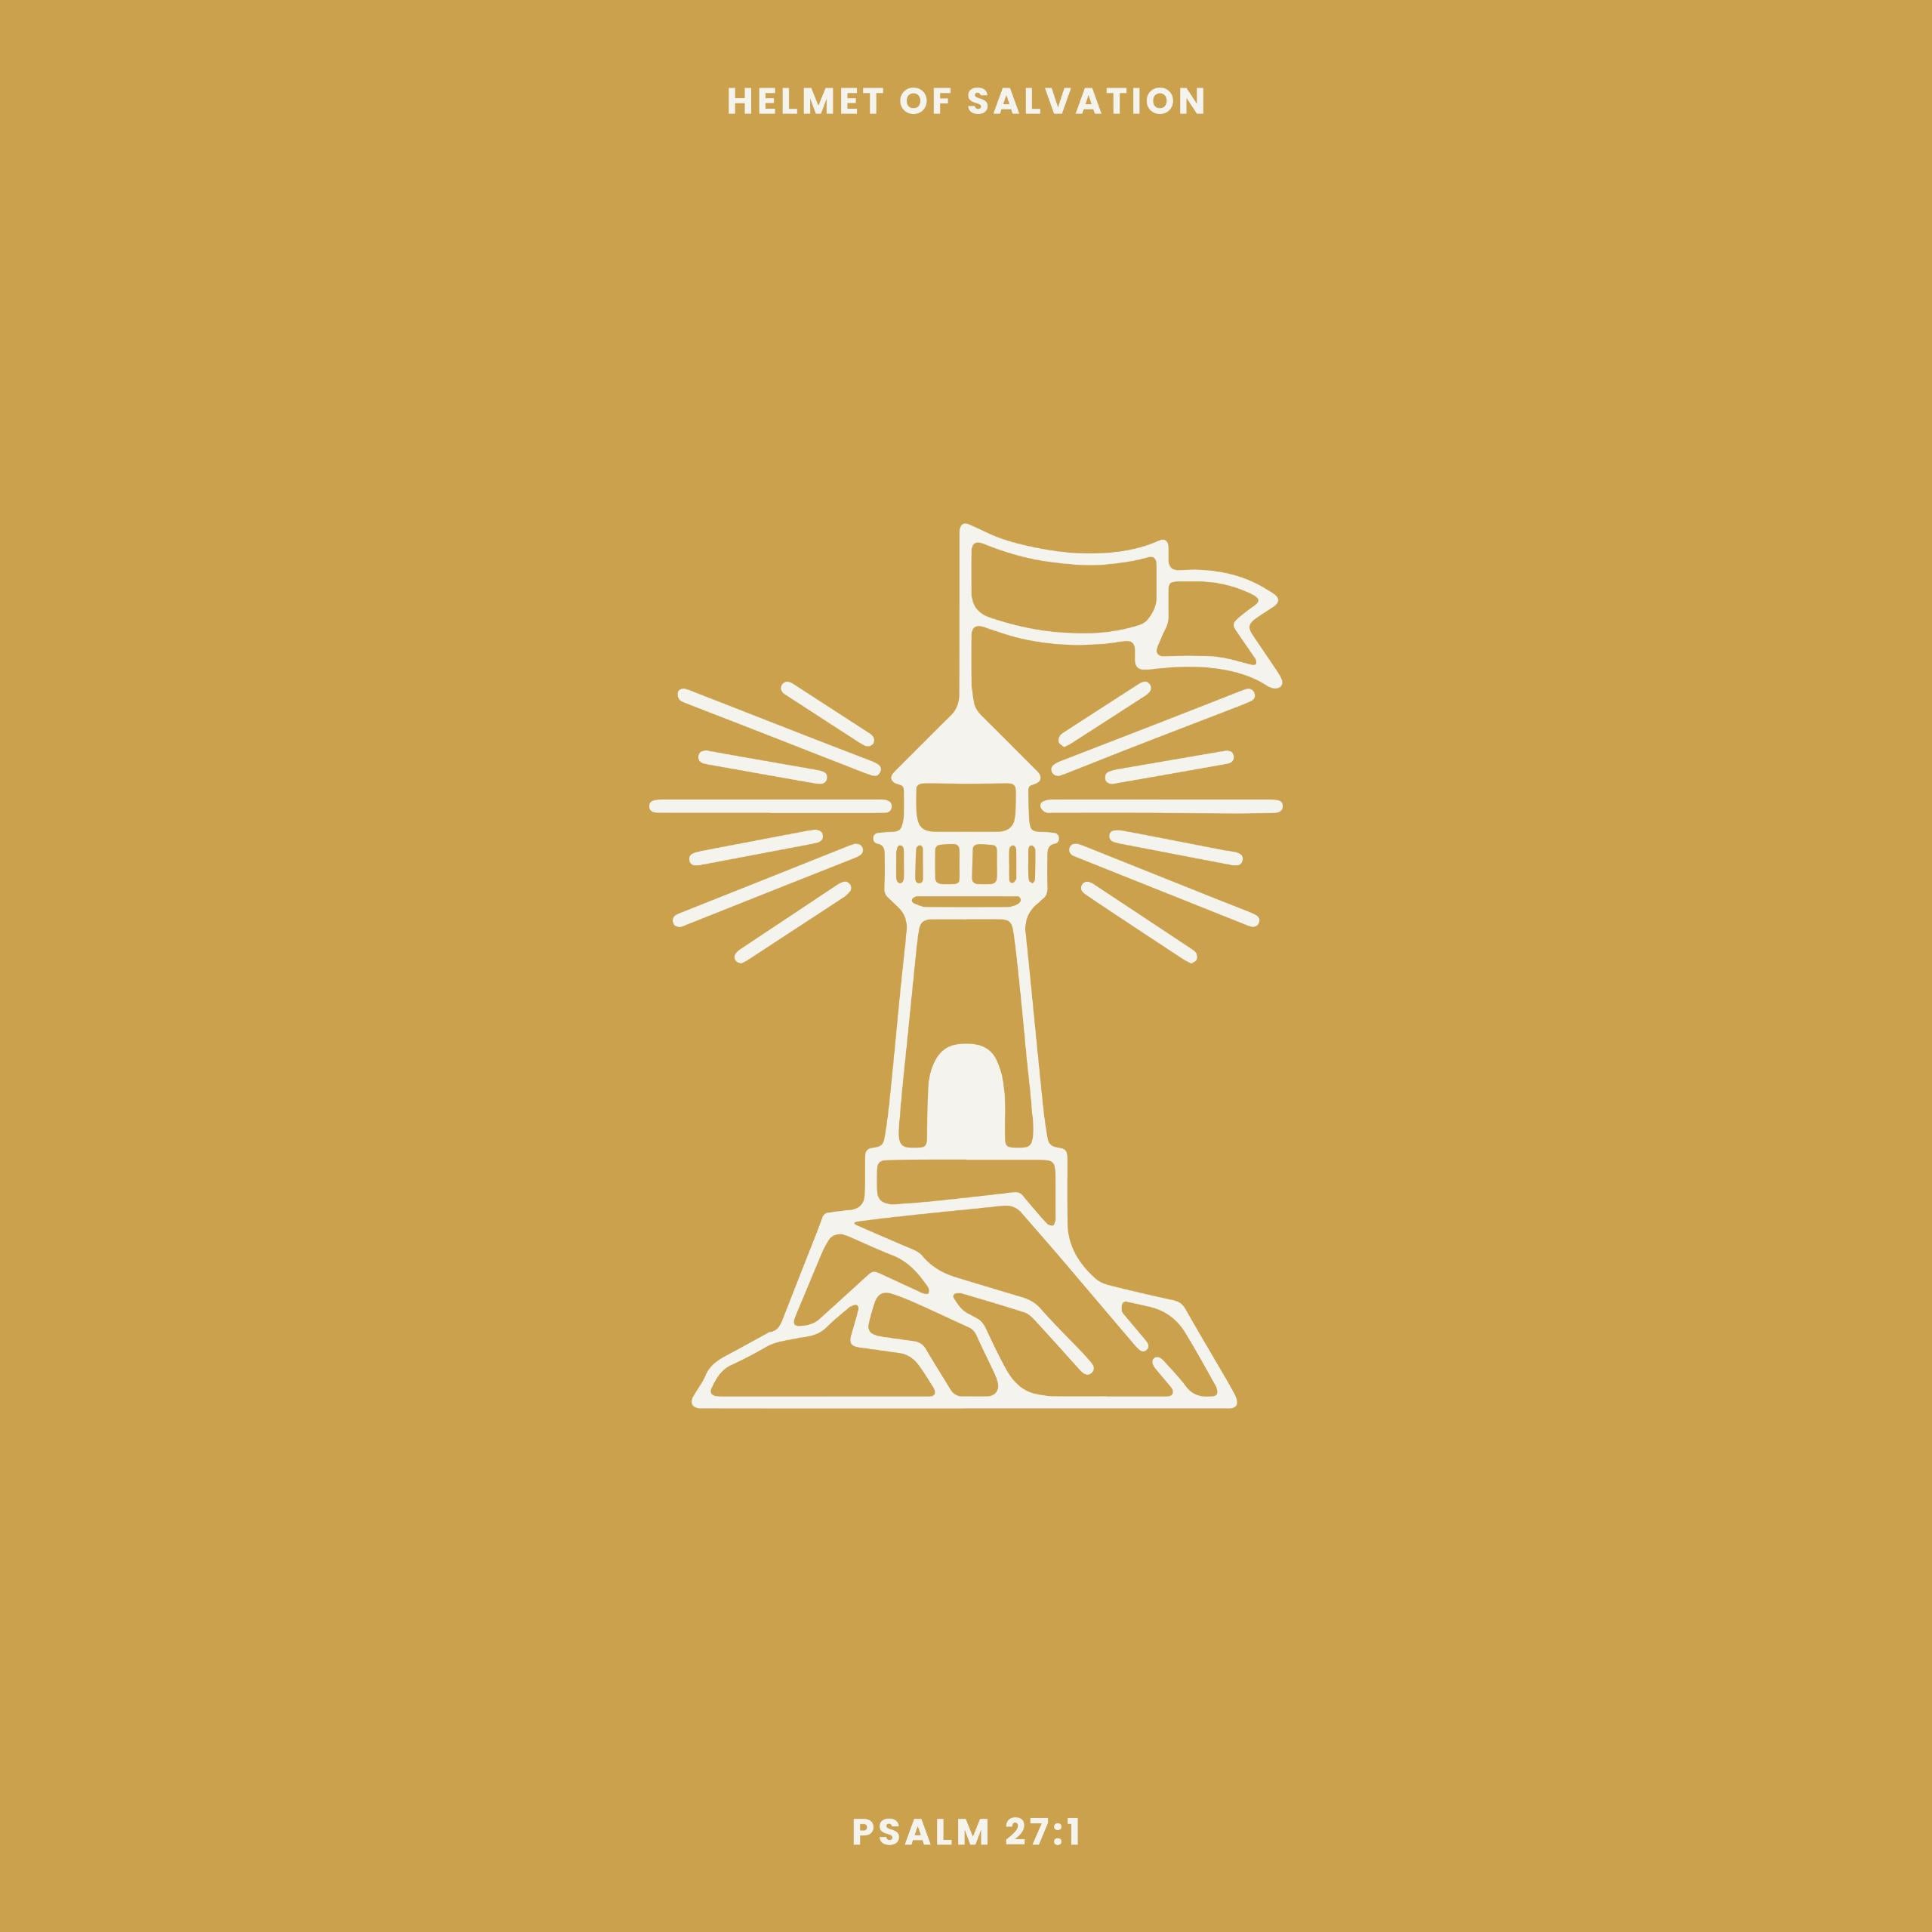 Psalm 27:1 "Lighthouse" (Helmet of Salvation - Week 1)